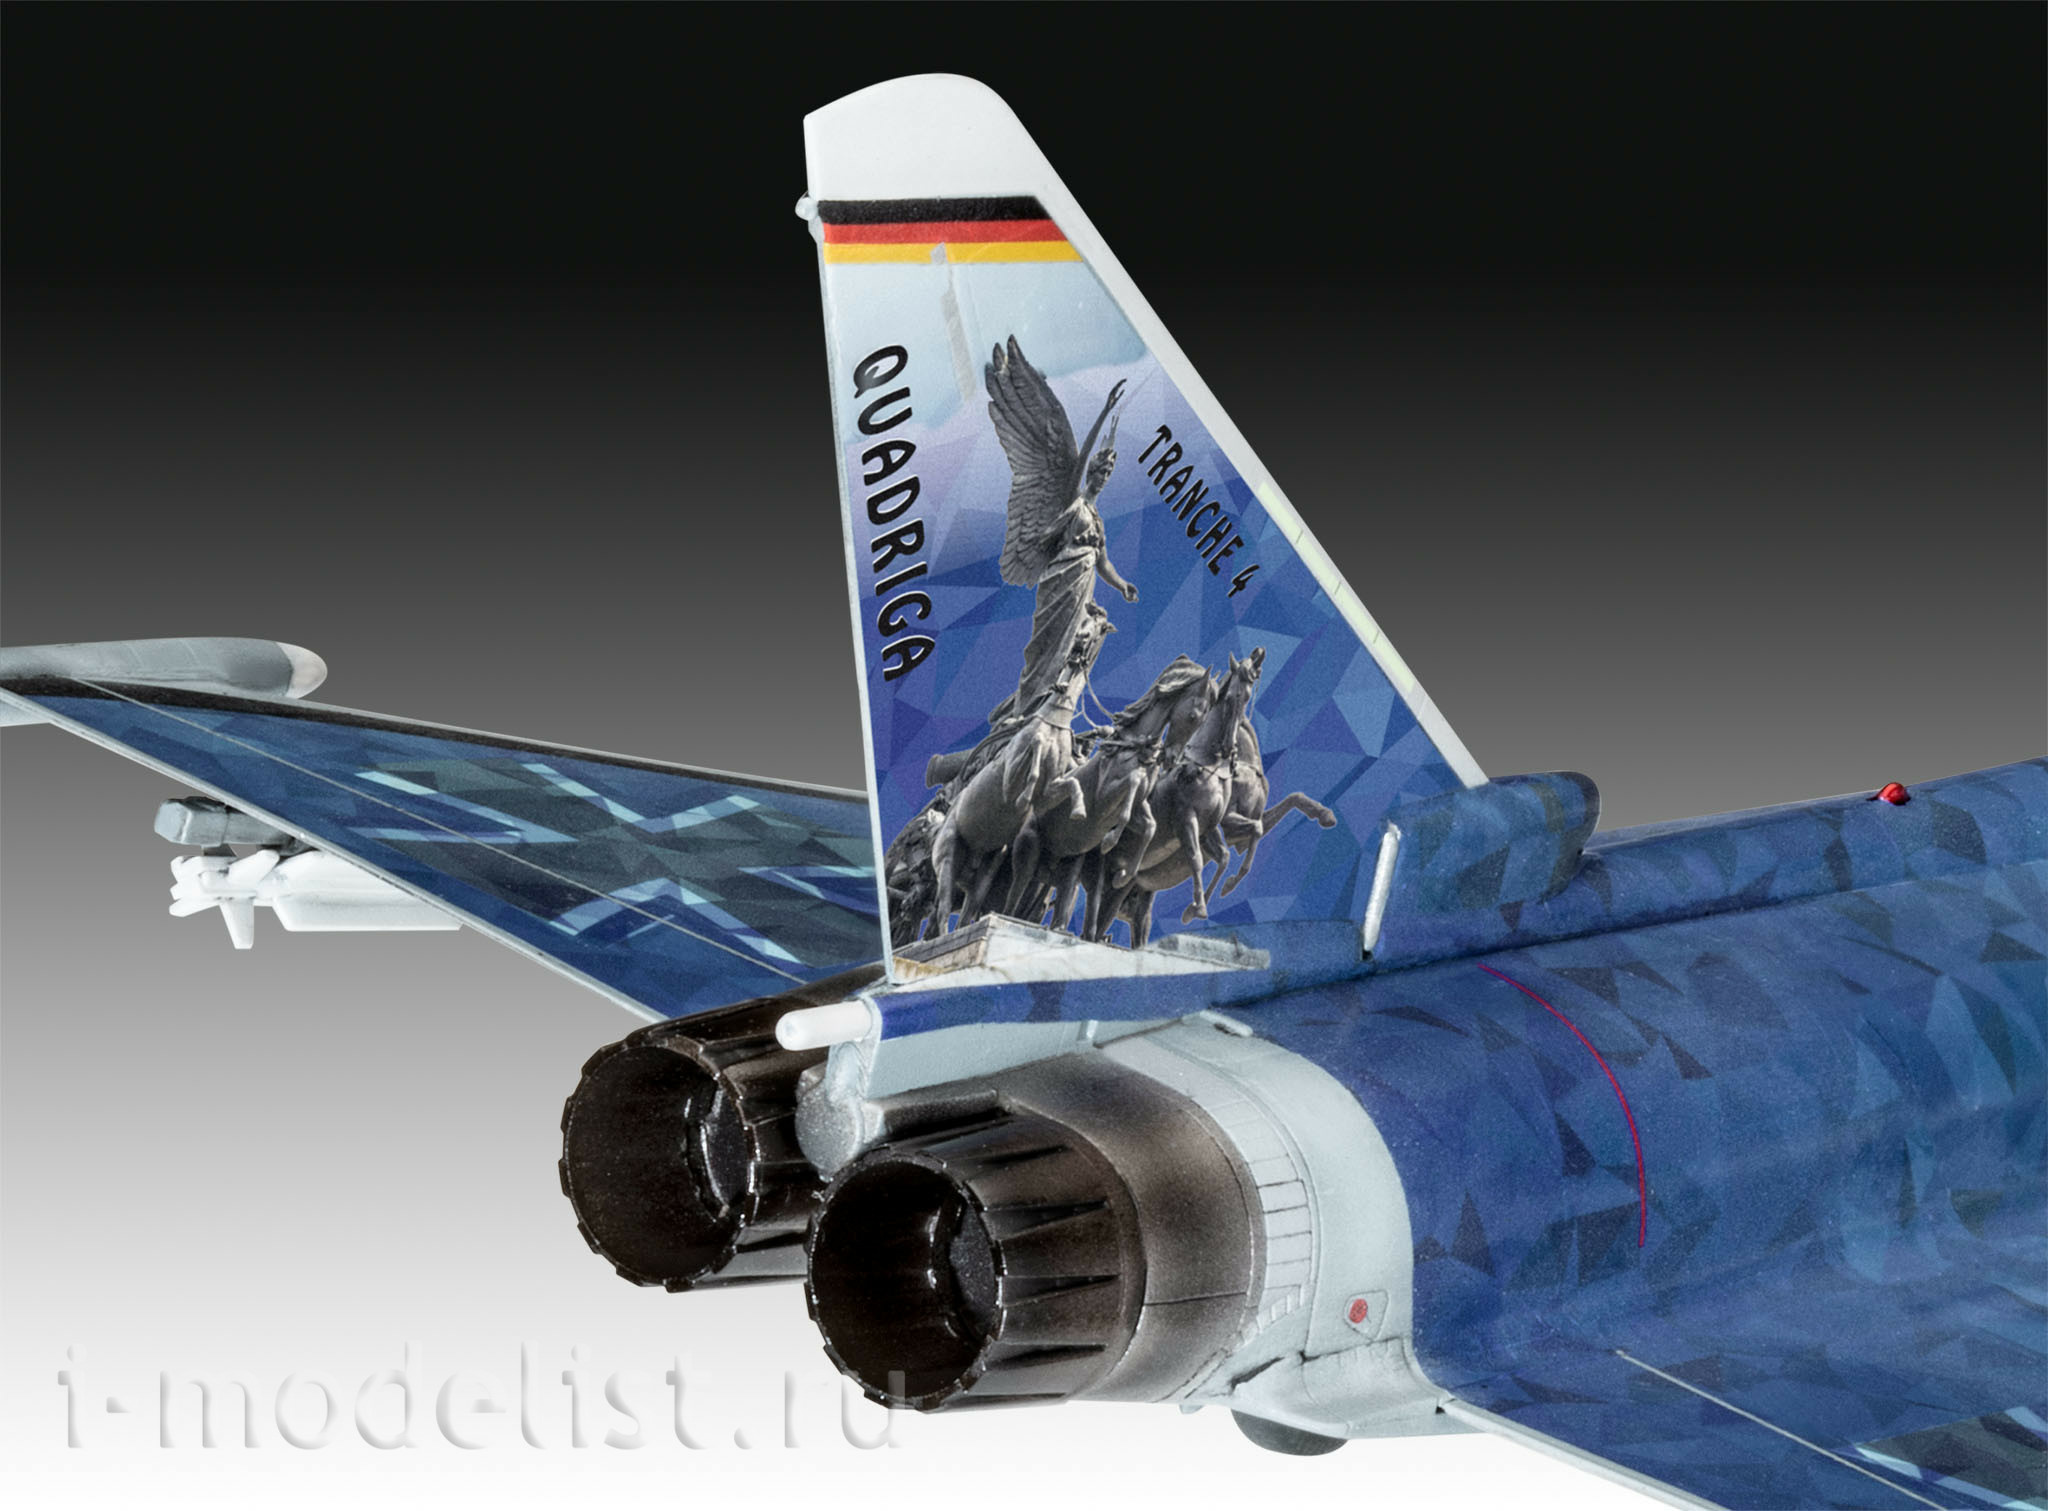 03843 Revell 1/72 Eurofighter 